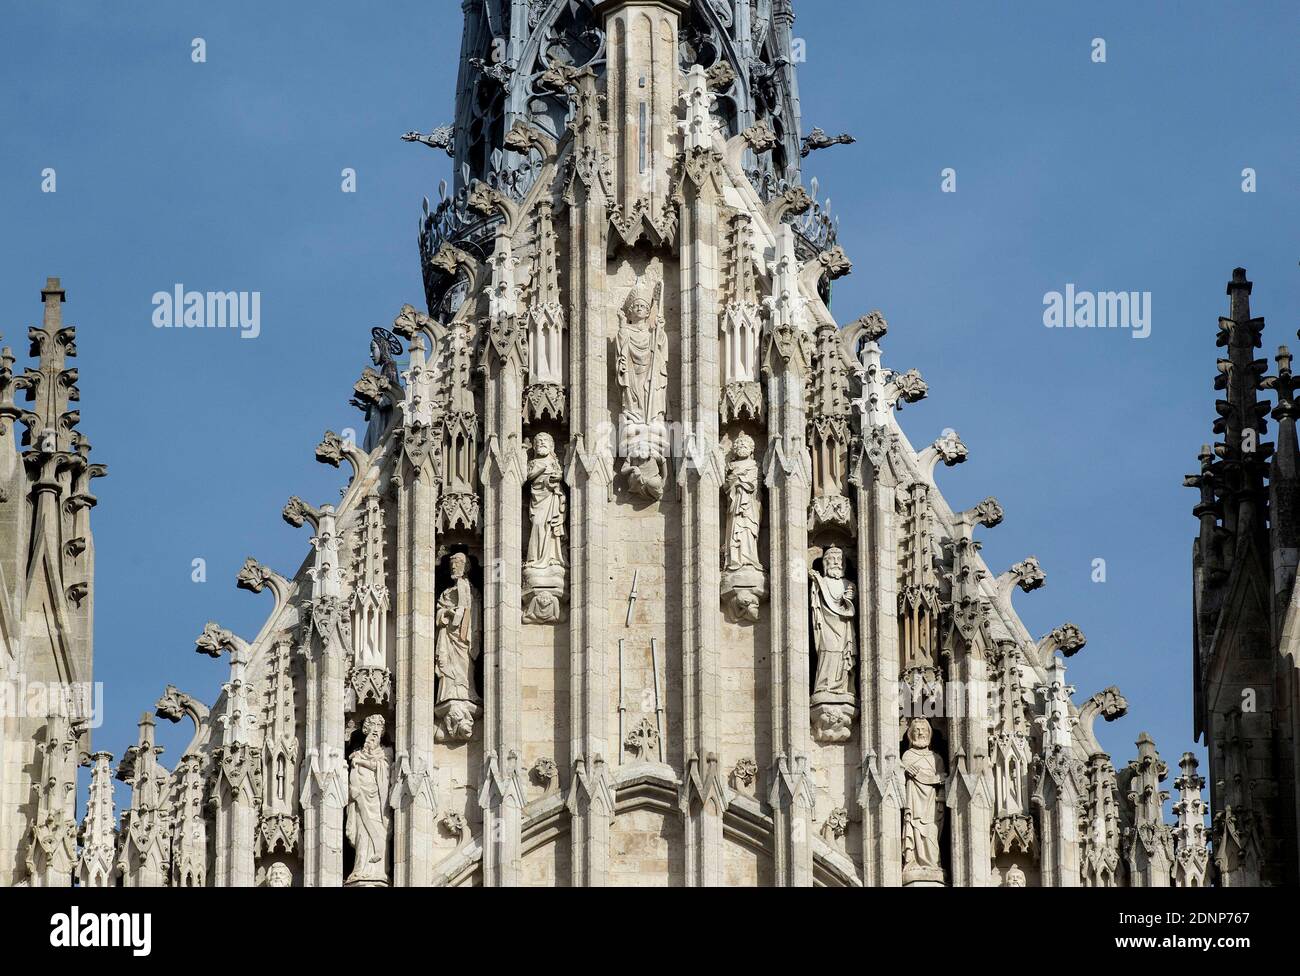 Amiens (Francia settentrionale): Dettaglio della Basilica della Cattedrale di nostra Signora di Amiens, dichiarata Patrimonio dell'Umanità dall'UNESCO. Foto Stock